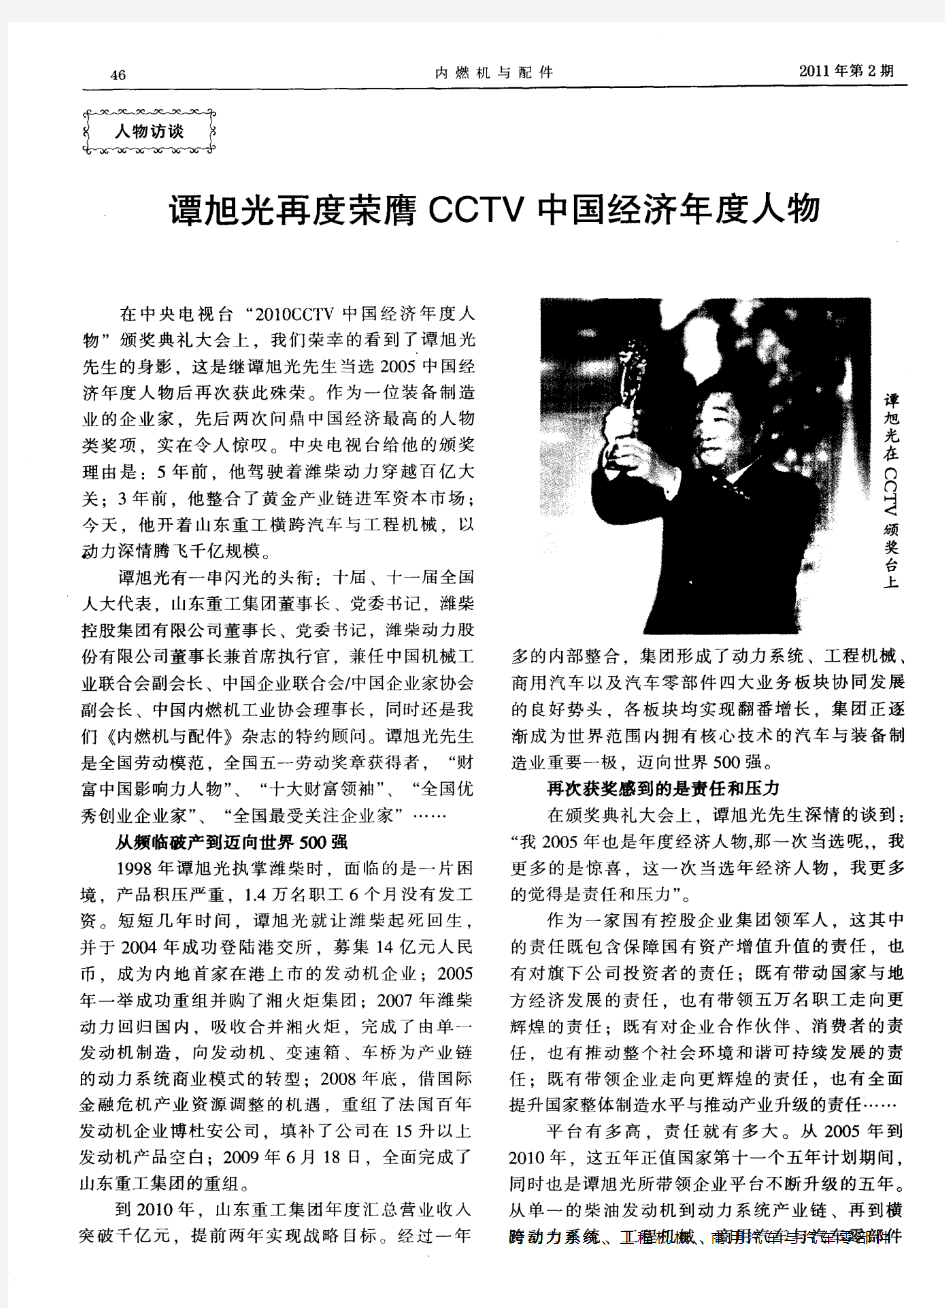 谭旭光再度荣膺CCTV中国经济年度人物